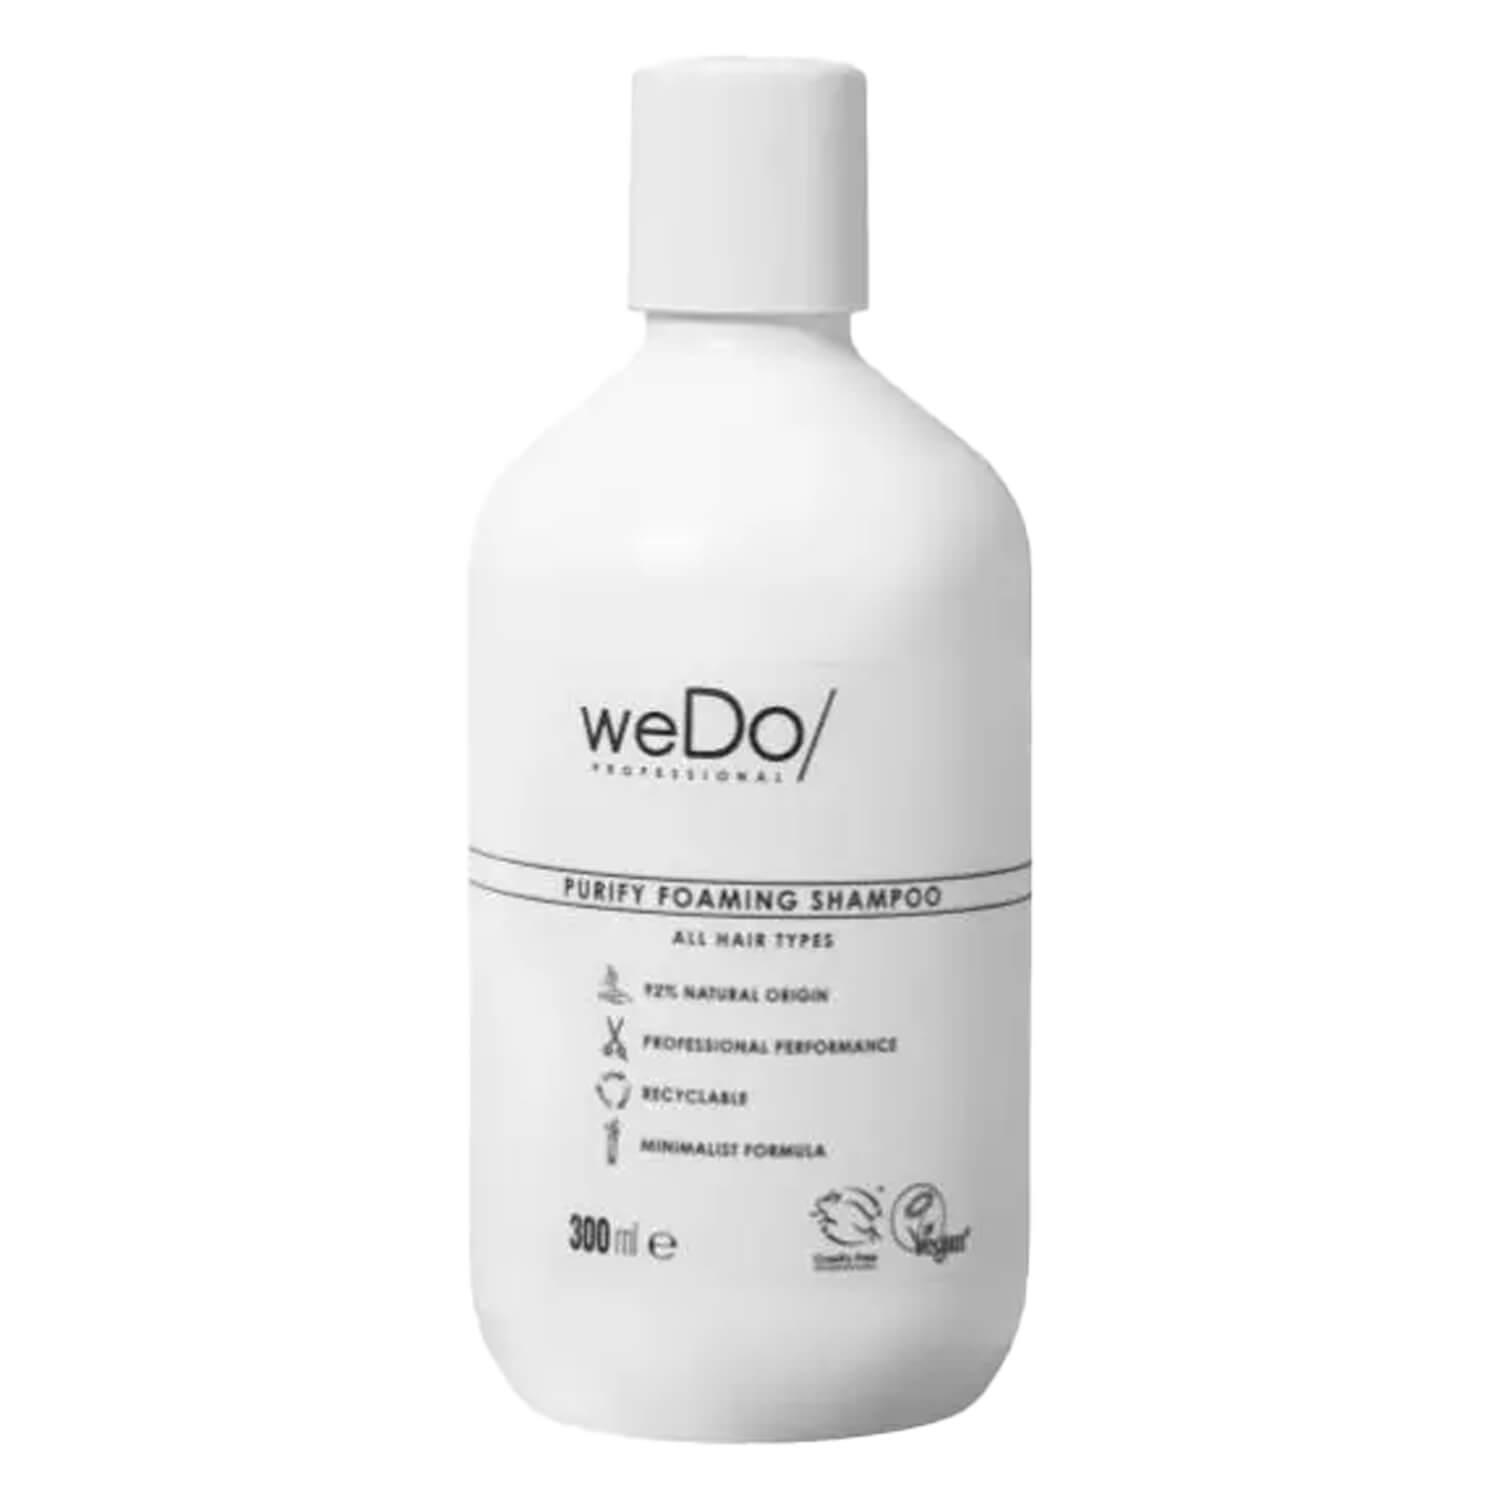 weDo/ - Purify Shampoo